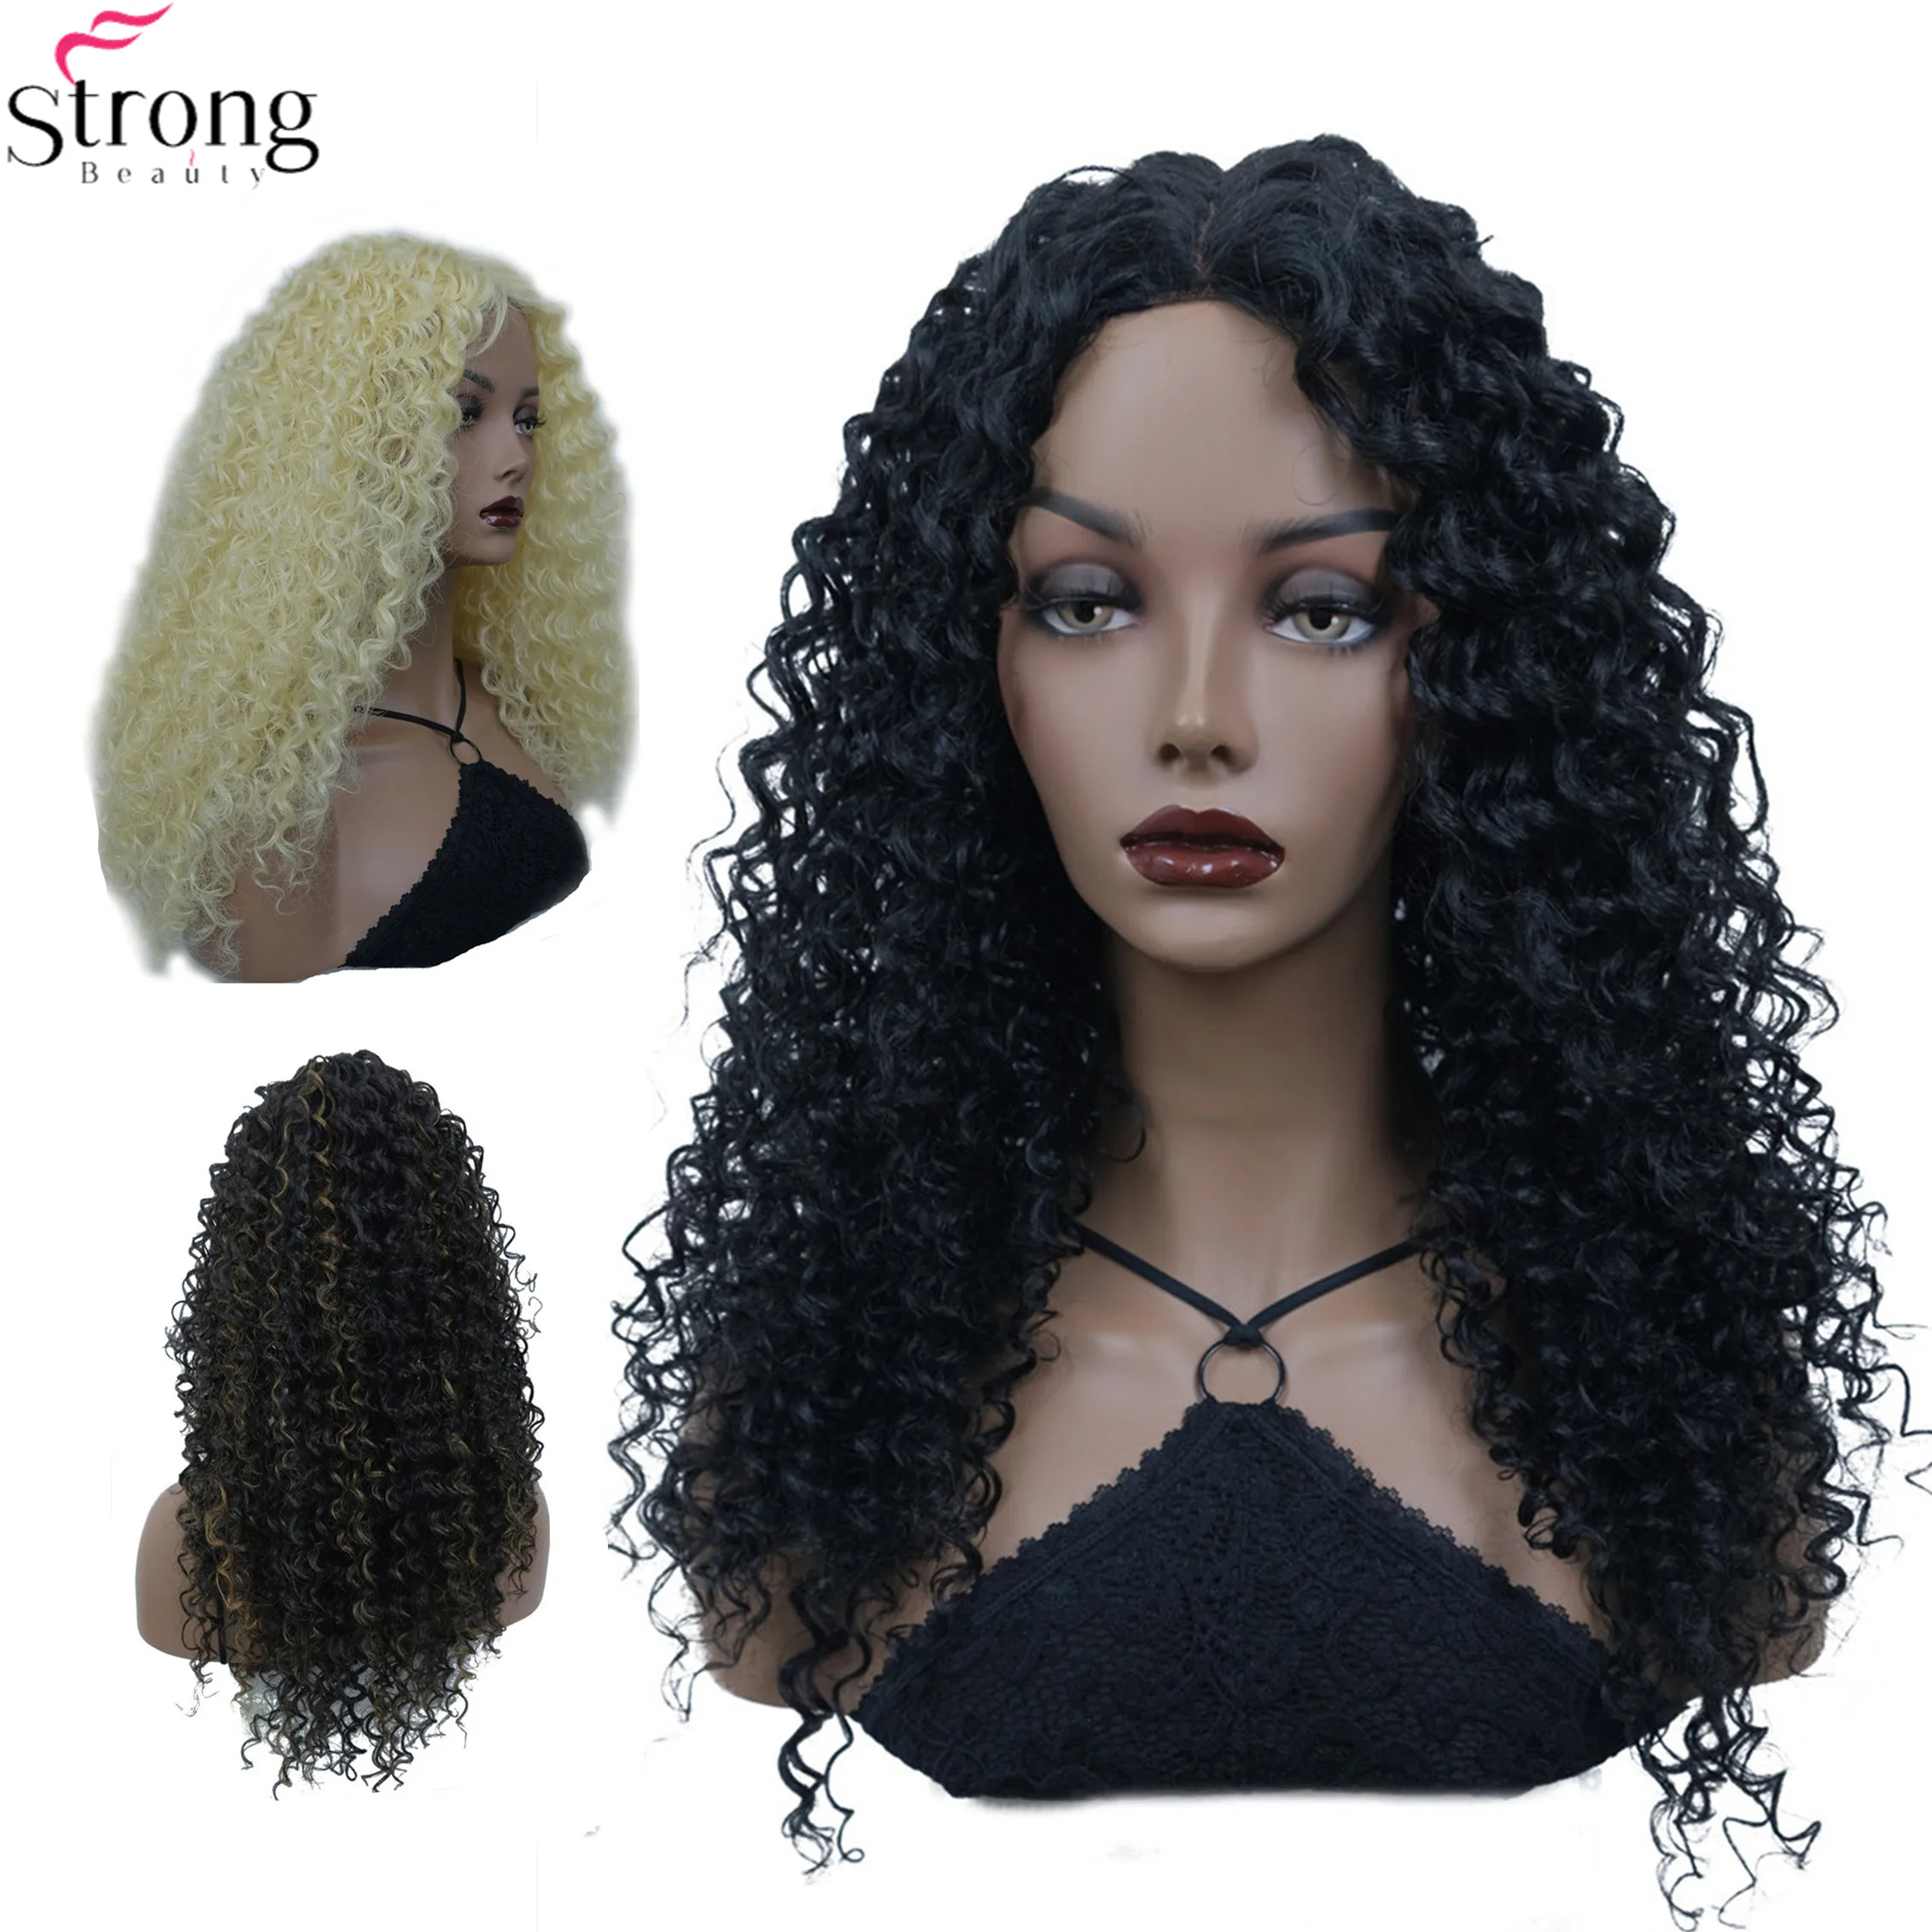 StrongBeauty Синтетический Кружевной Парик С Длинными Кудрявыми Волосами, Светлые/черные Парики Для женщин